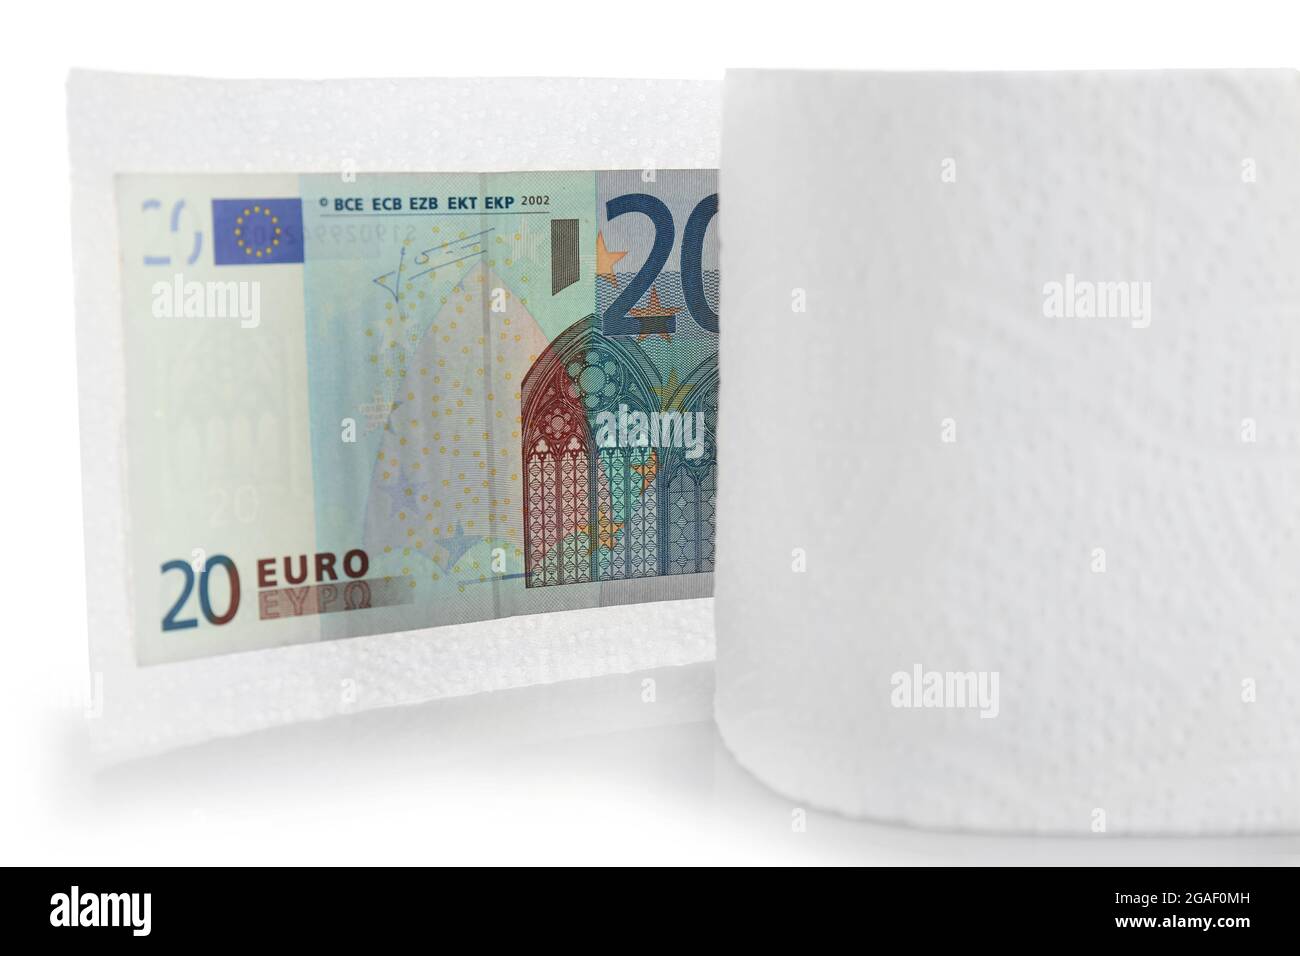 Papier toilette et billet en euros sur fond clair Photo Stock - Alamy